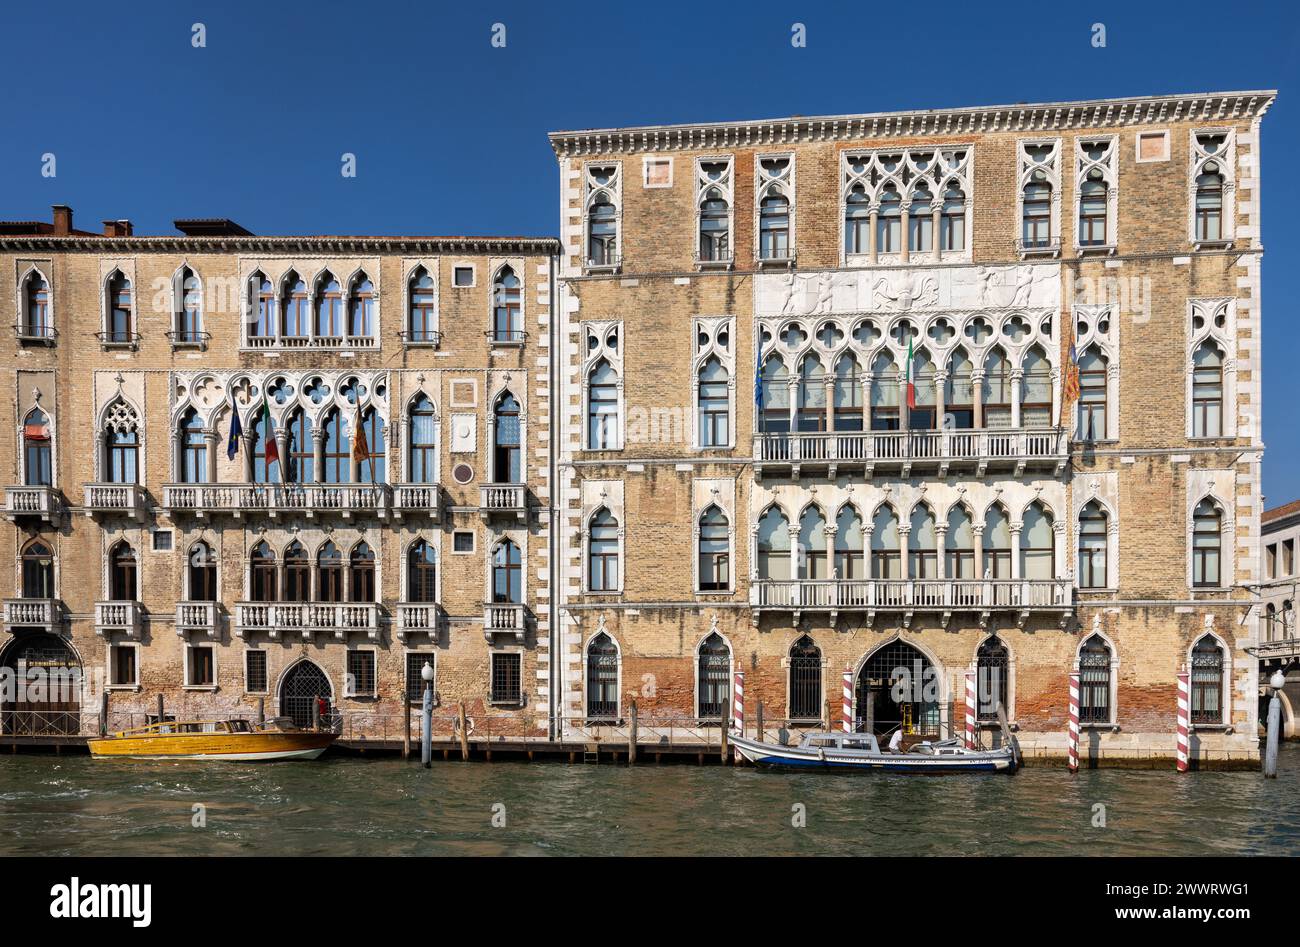 Venise, Italie - 6 septembre 2022 : Palais Ca' Foscari et le palais Giustinien au Grand canal dans le quartier Dorsoduro de Venise, Italie. Banque D'Images